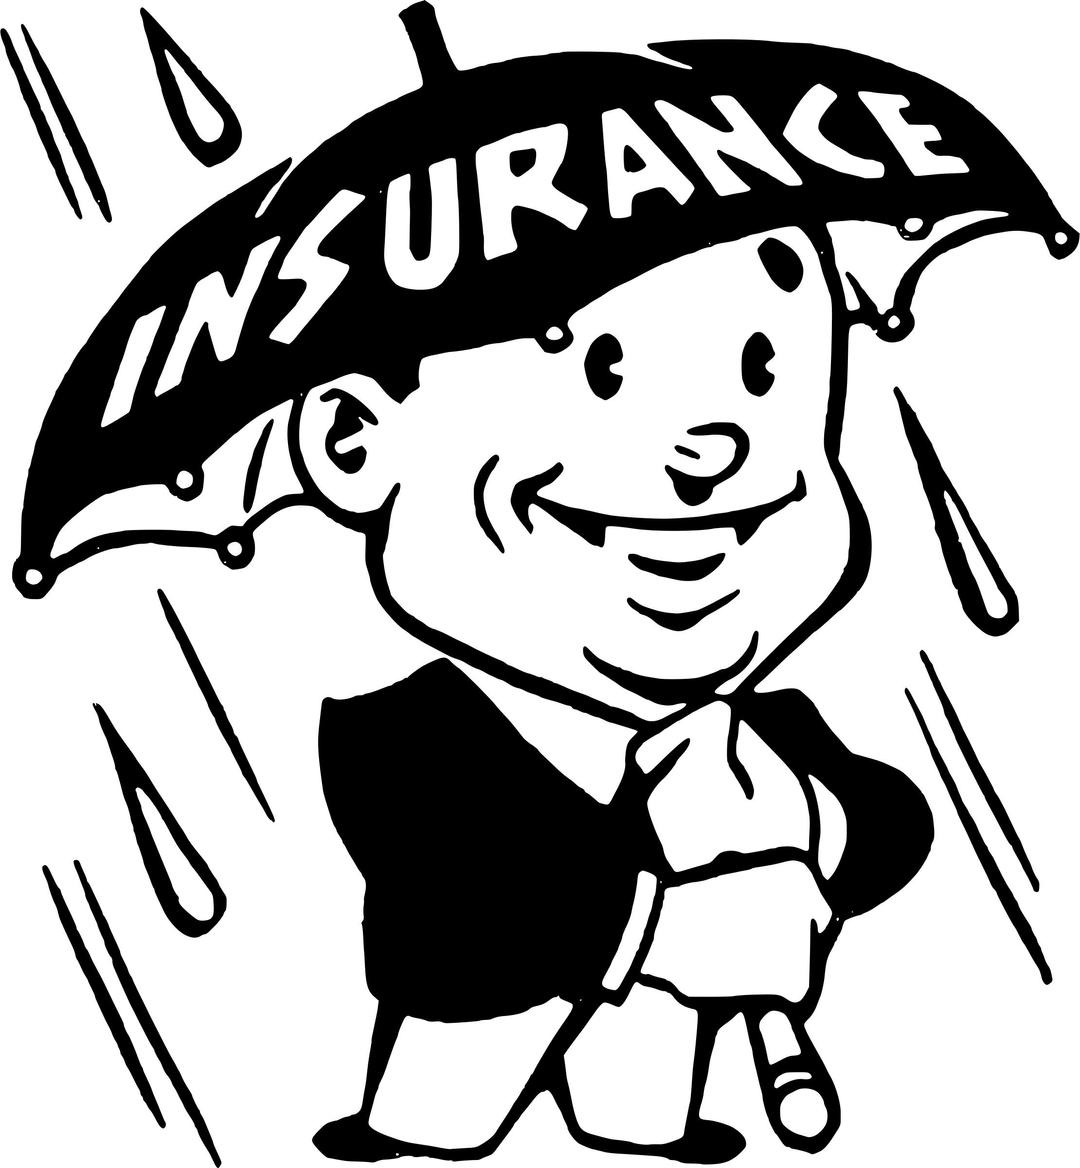 Insurance umbrella png transparent